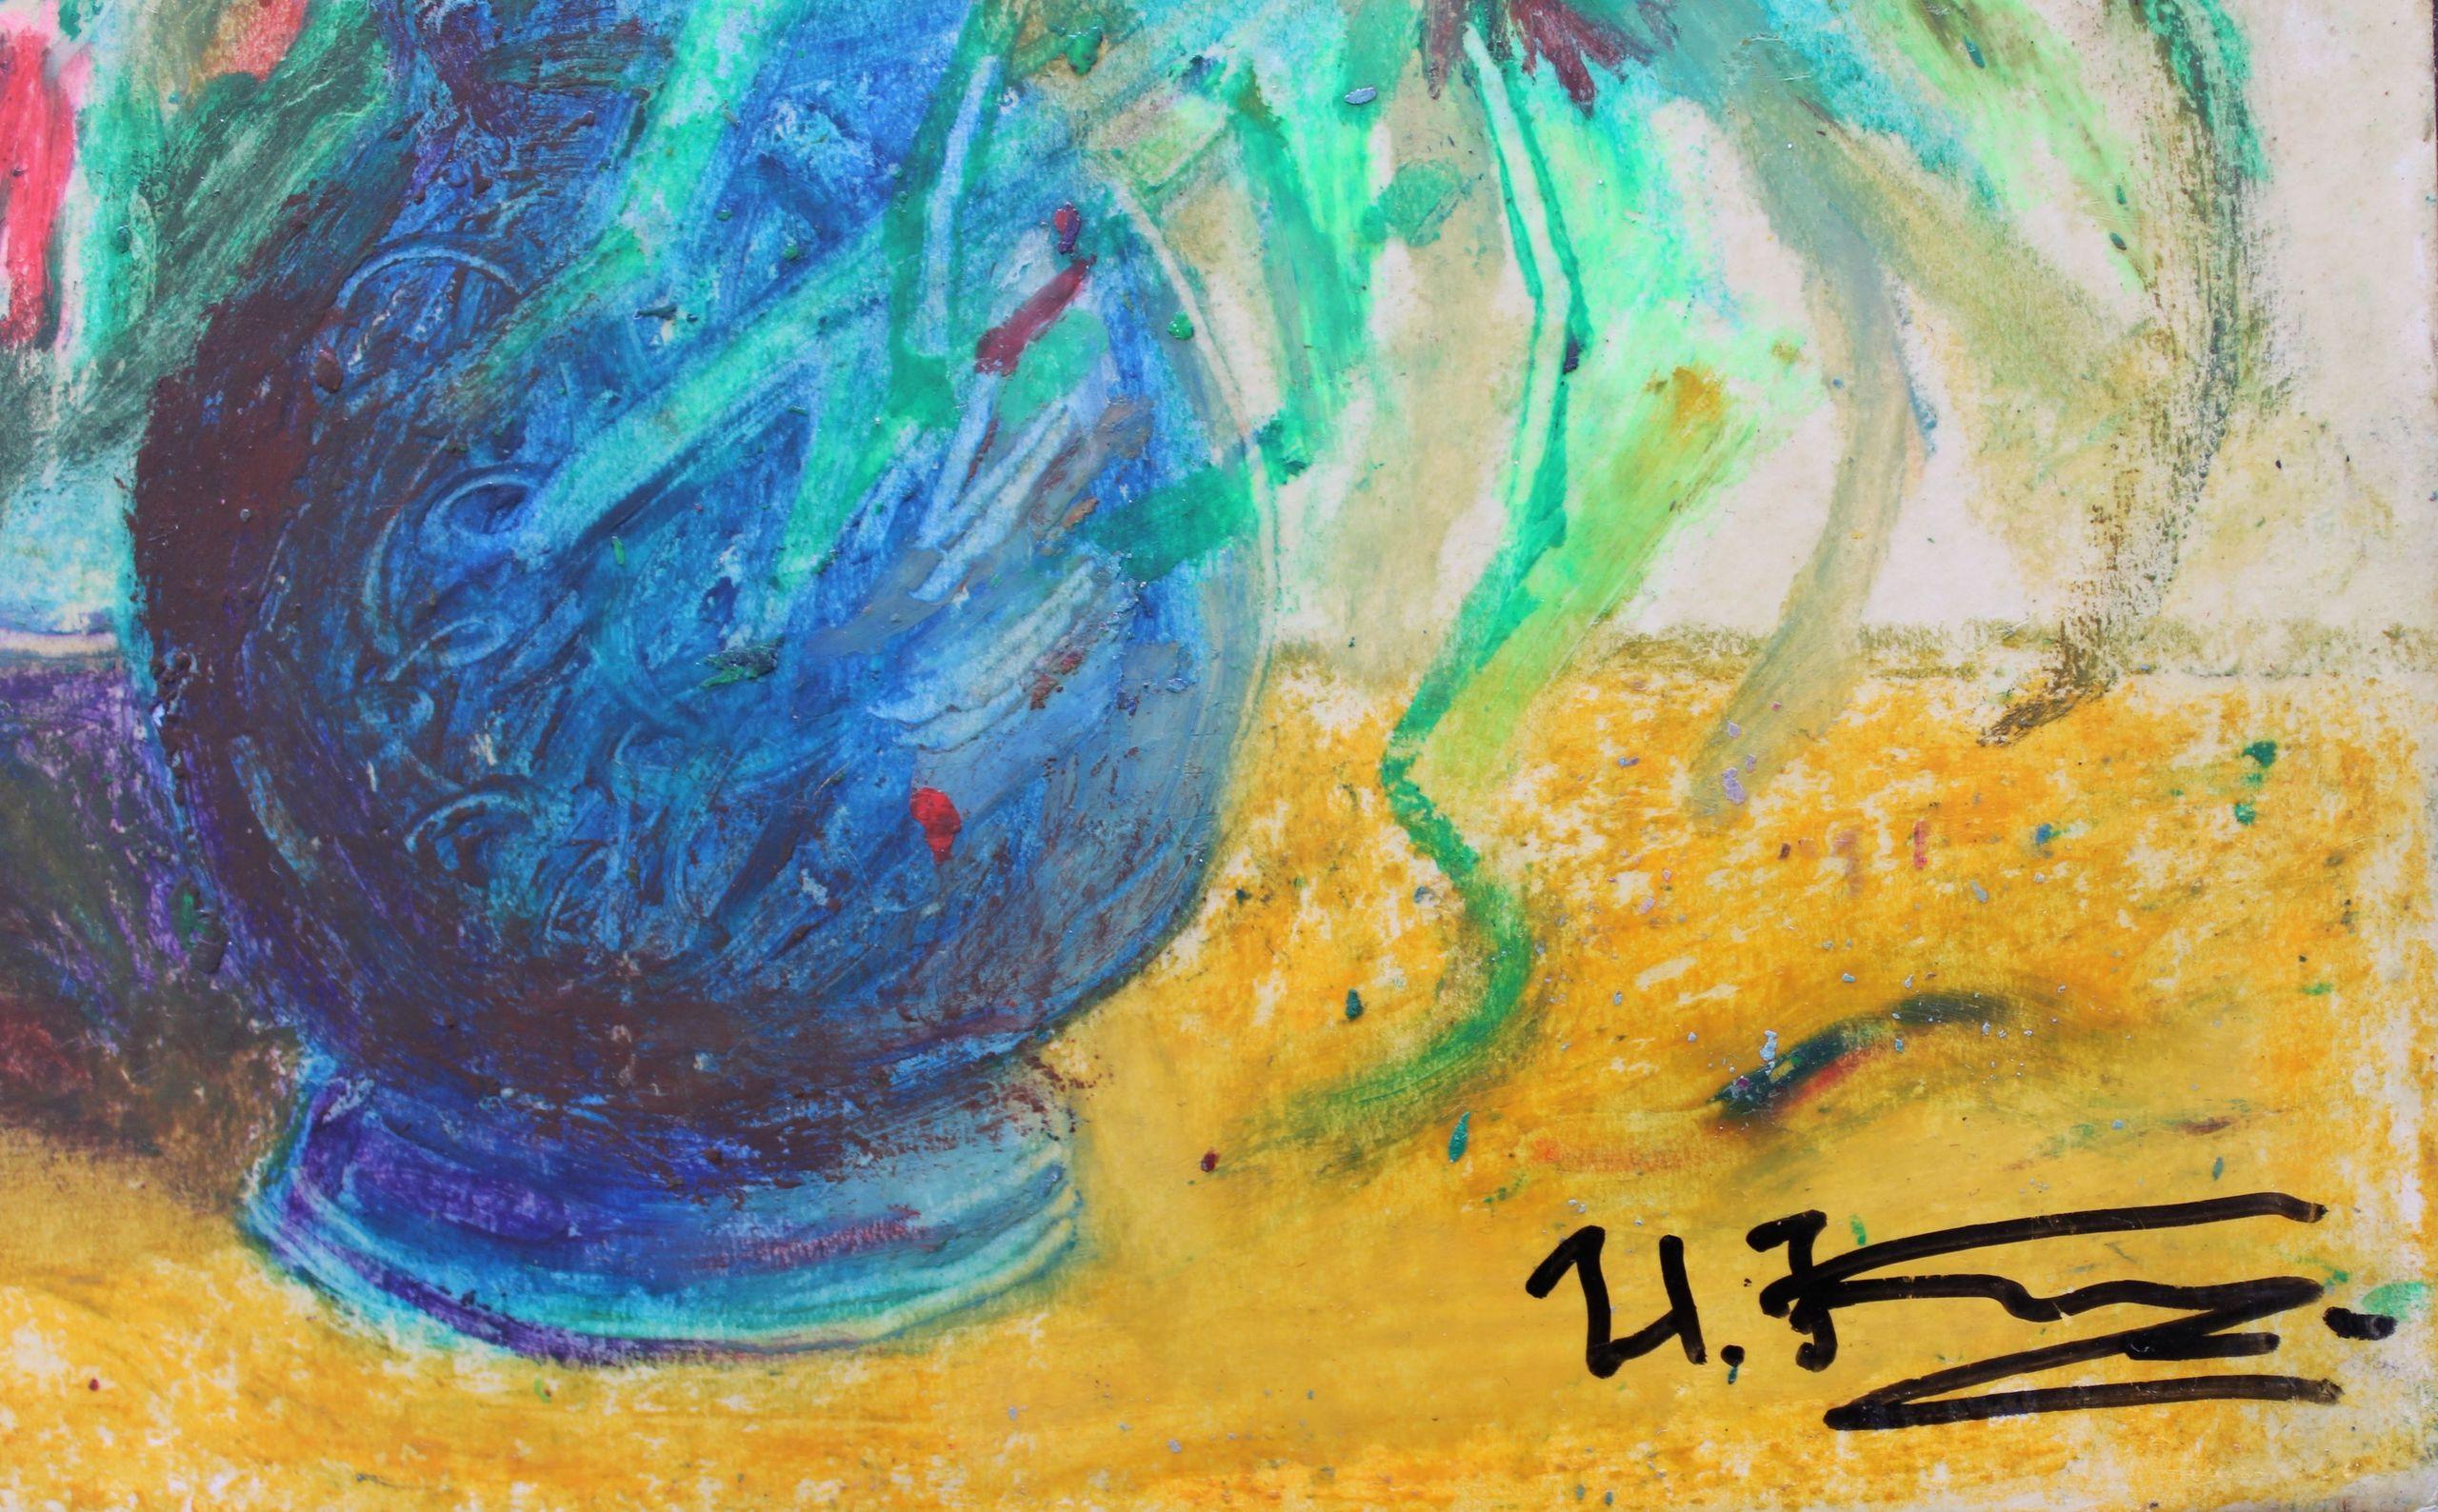 Fleurs dans un vase bleu. Cardboard, technique d'auteur, 29x21,5 cm - Painting de Uldis Krauze